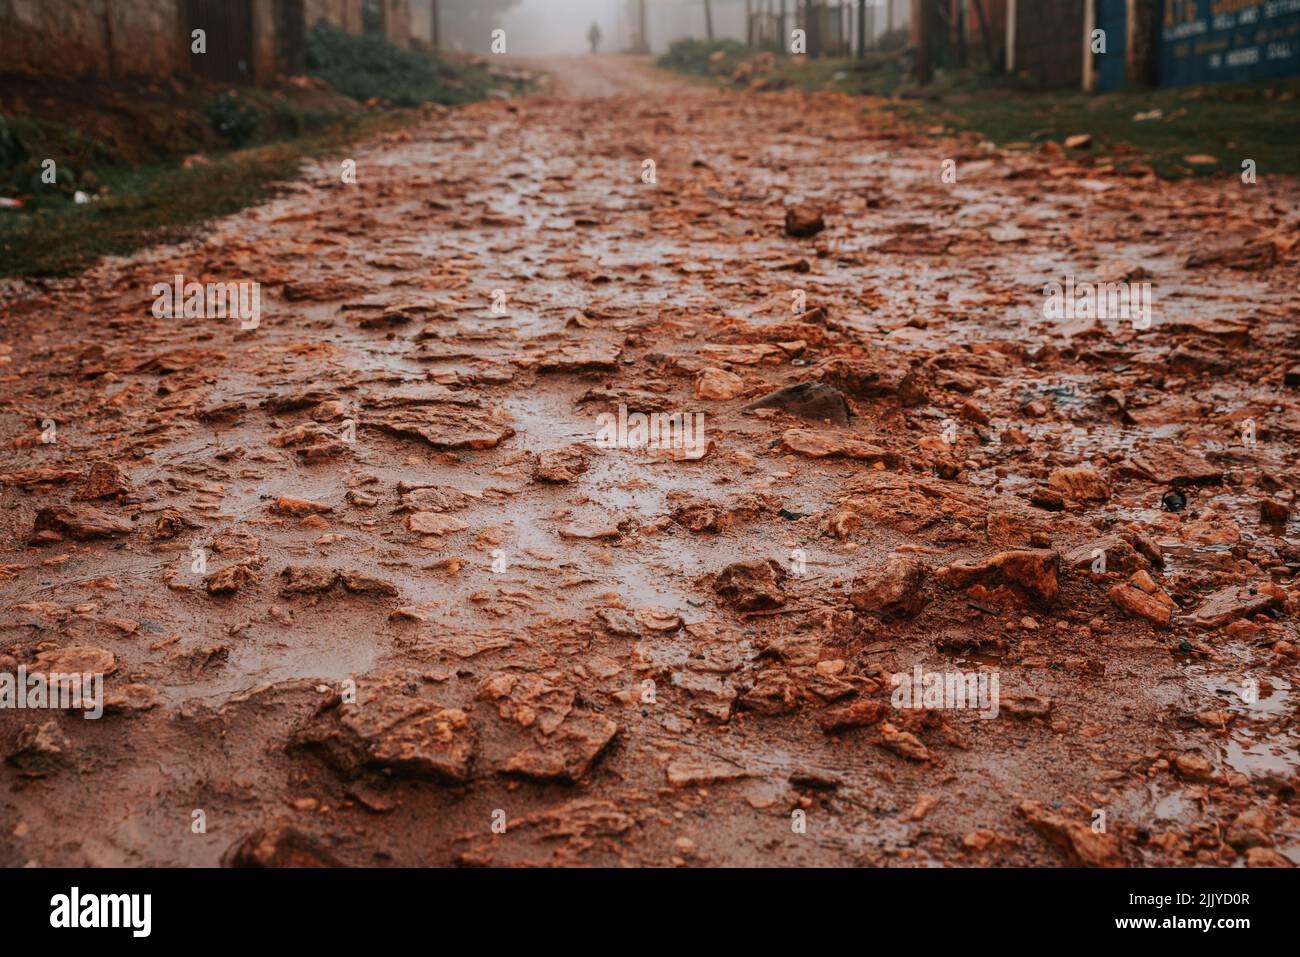 Rough red dirt roads in kenya where Kenyan runners and marathon runners run Stock Photo